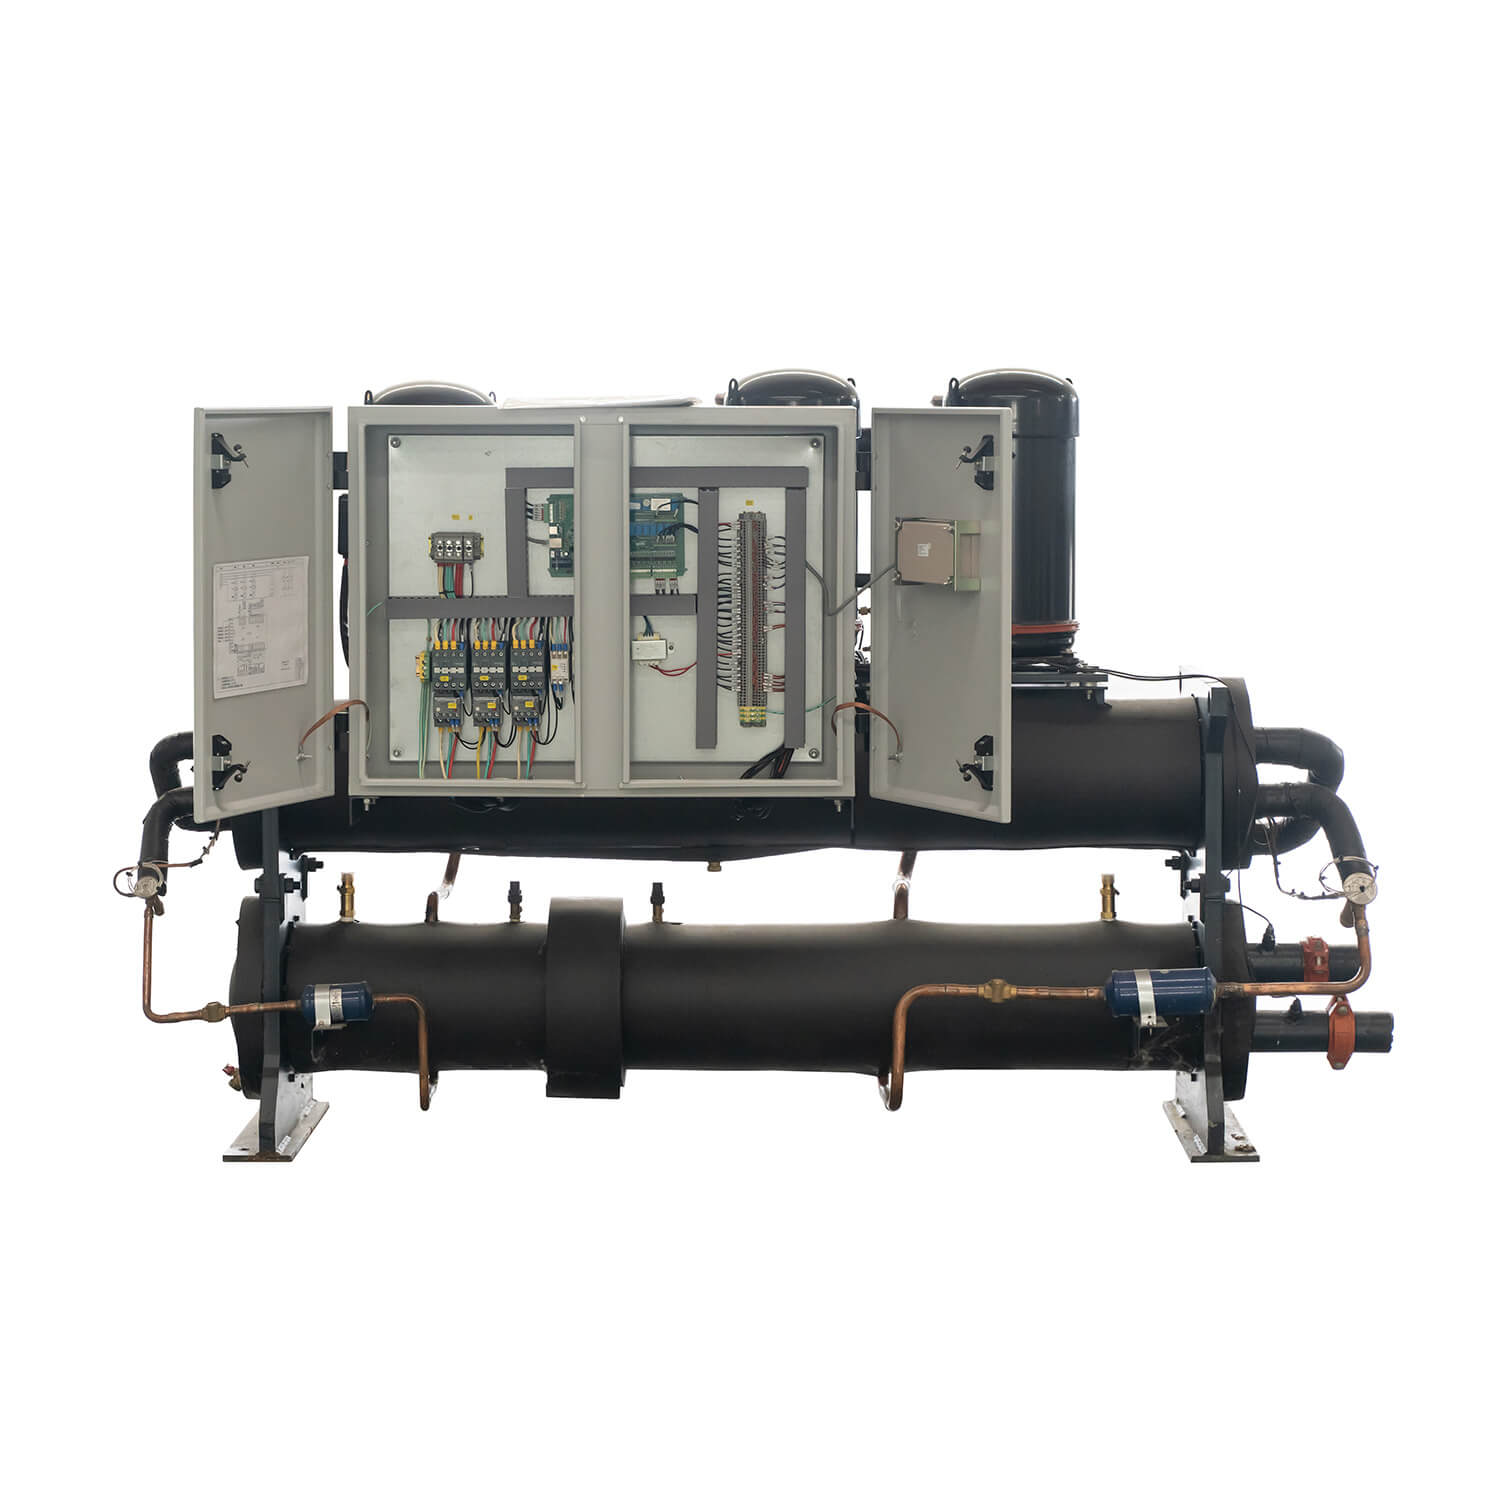 Enfriador Scroll refrigerado por agua de 70kw-280kw y bomba de calor, aire acondicionado central industrial/comercial